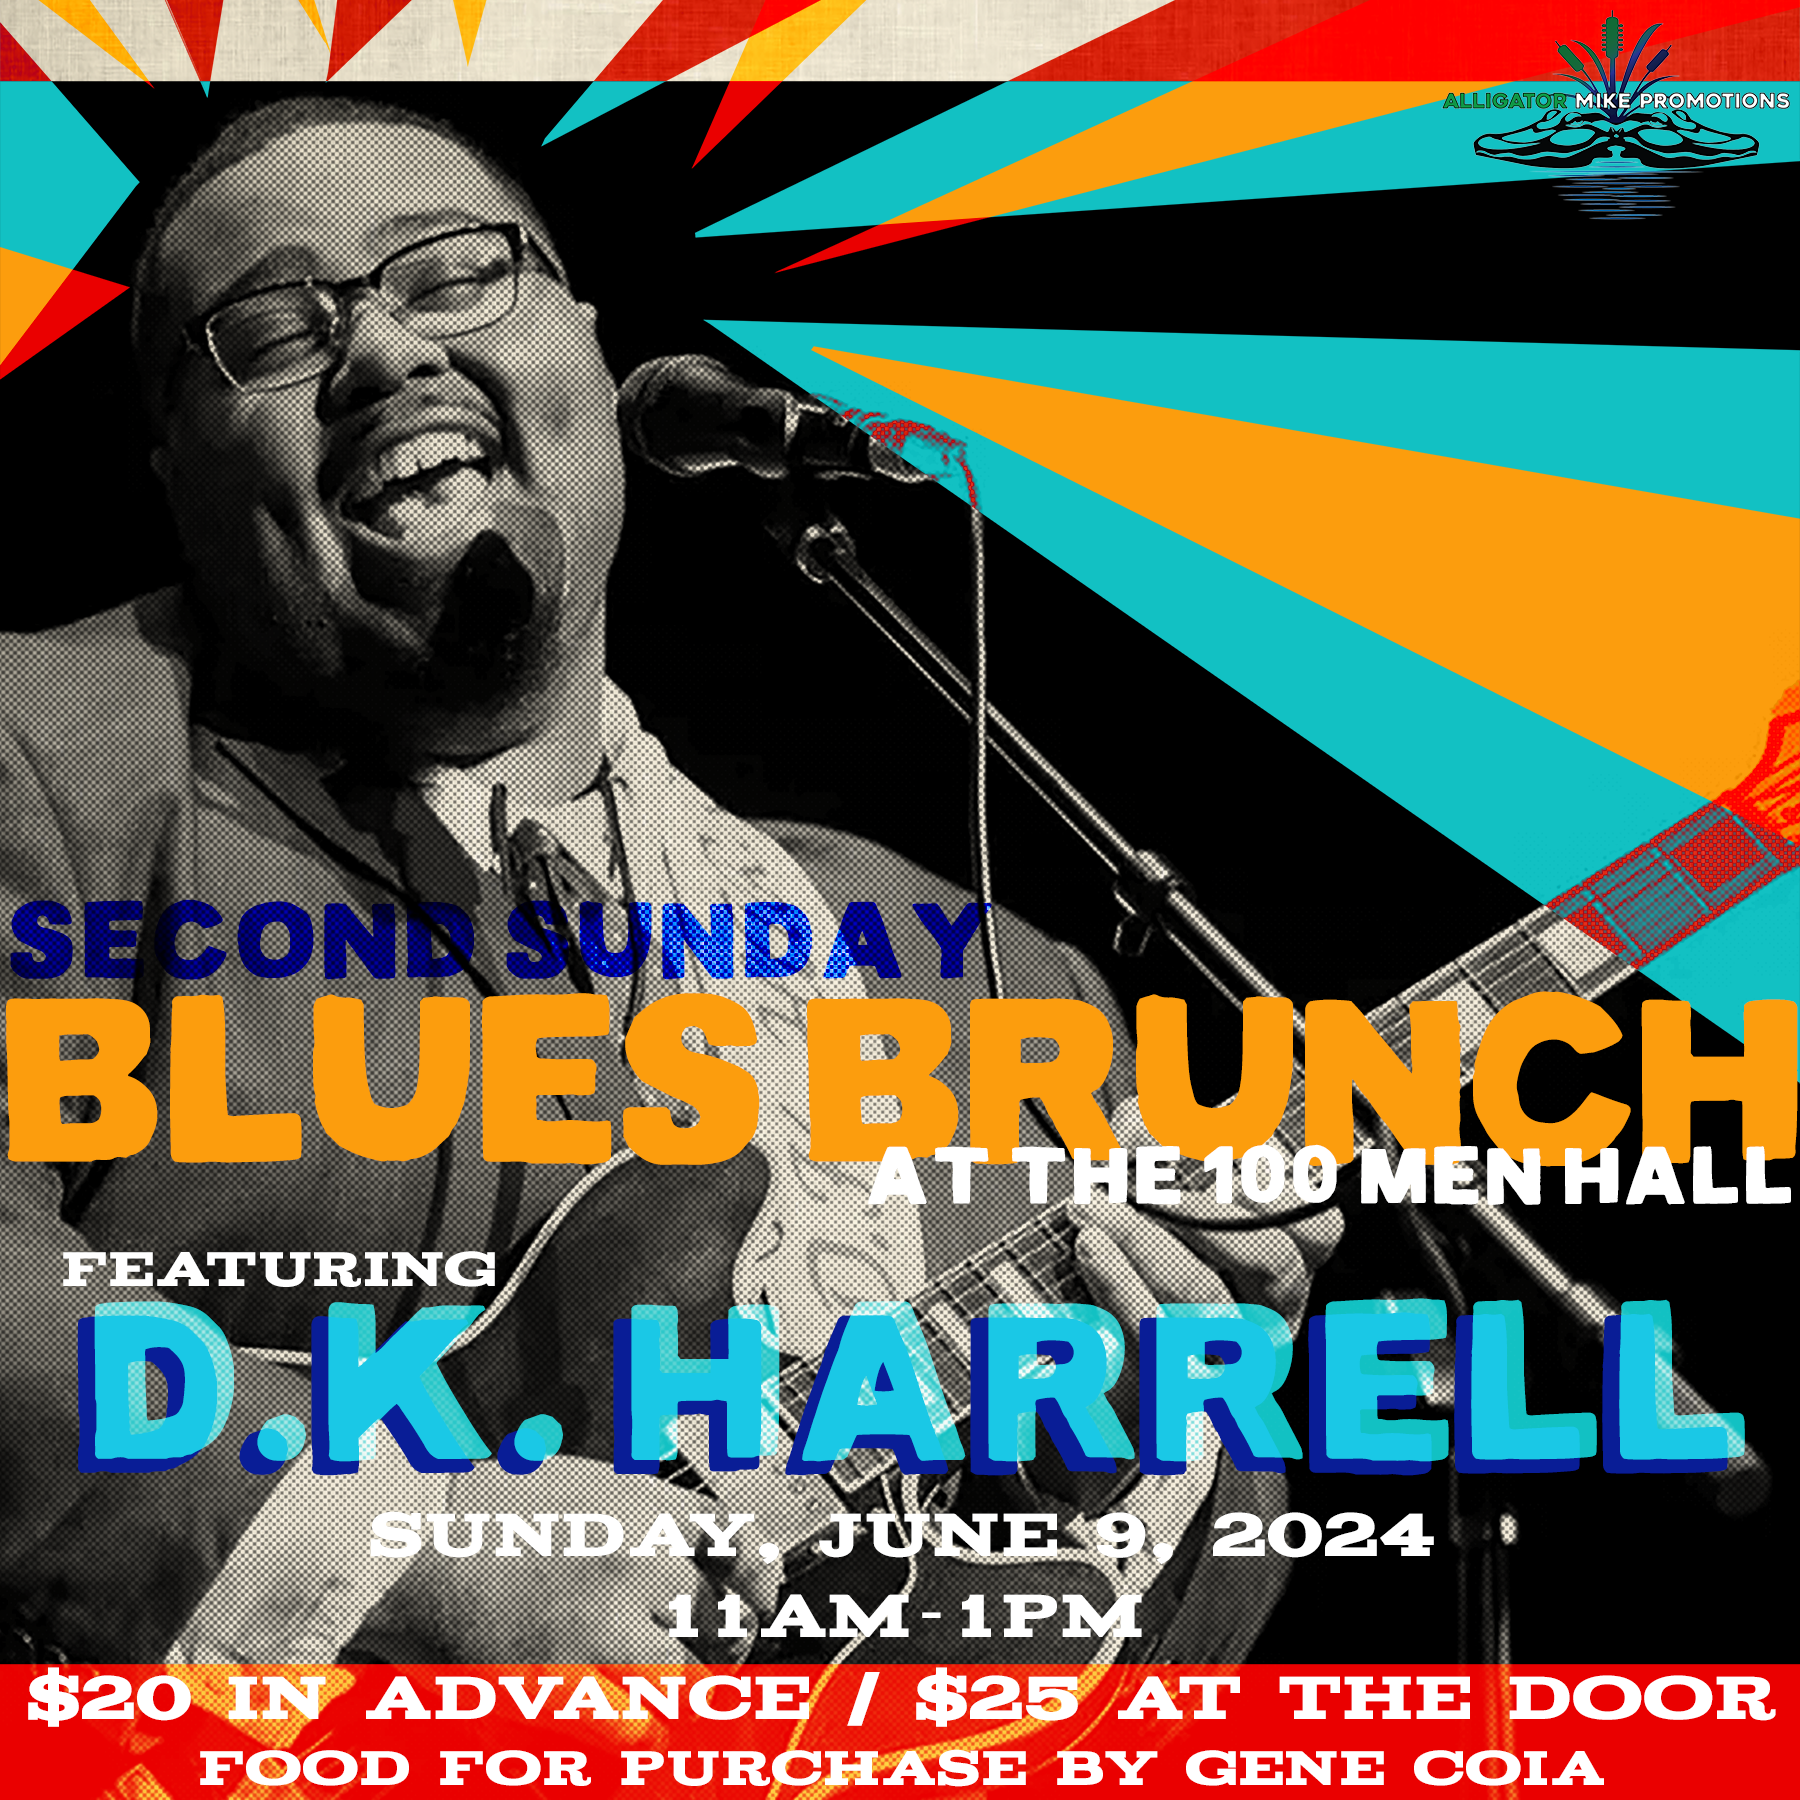 Blues Brunch featuring D.K. Harrell - Sunday, June 9, 2024 at 11AM